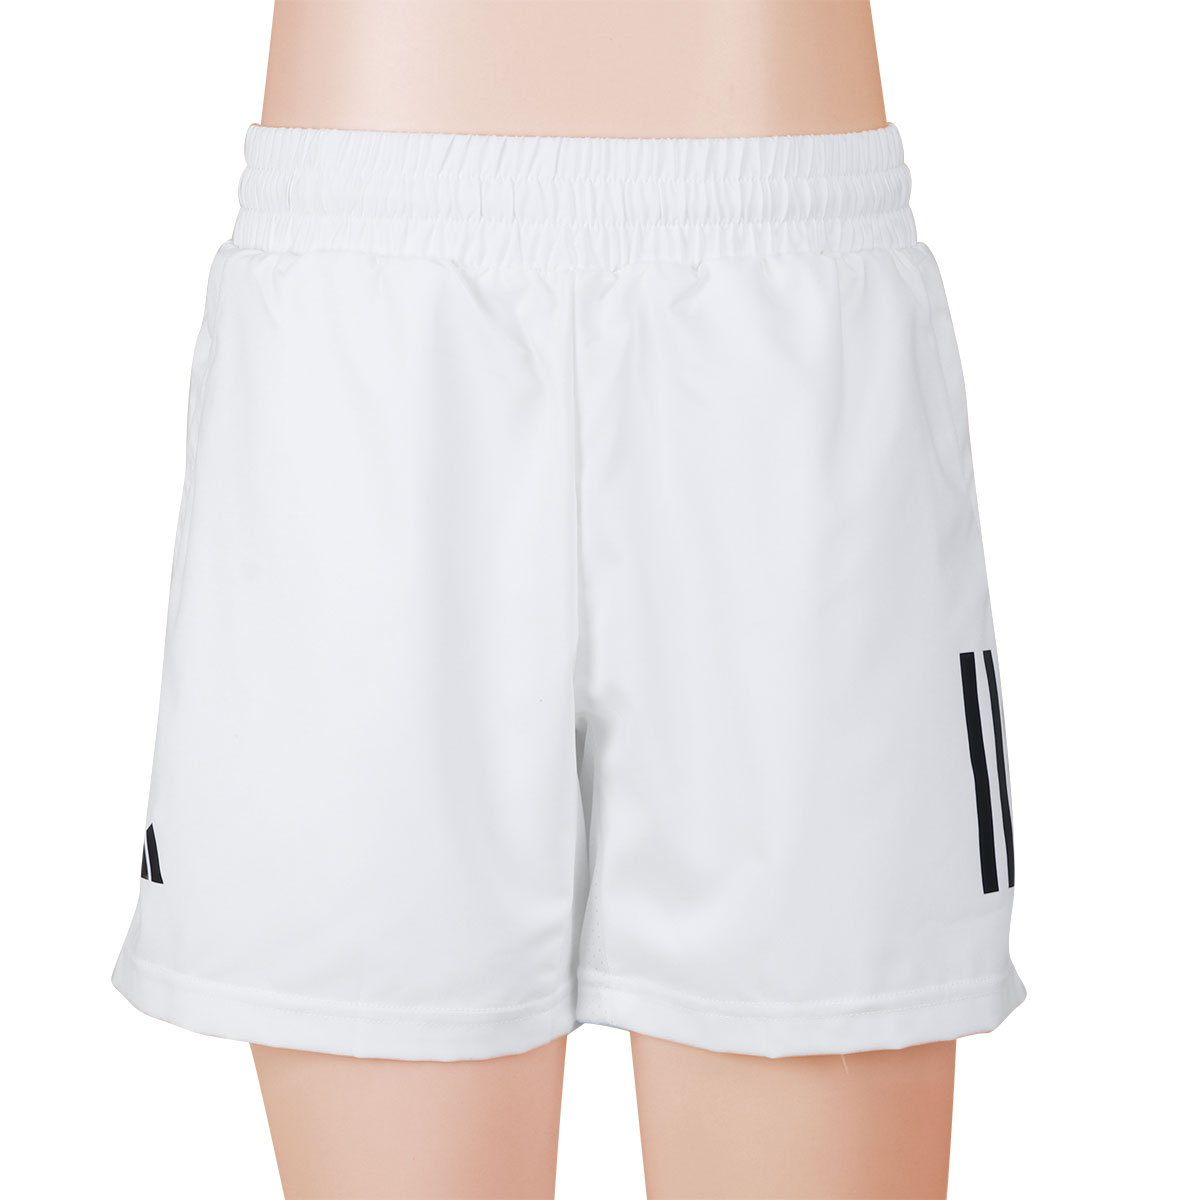 Shorts Adidas Club 3S Tennis Infantil Branco e Preto 